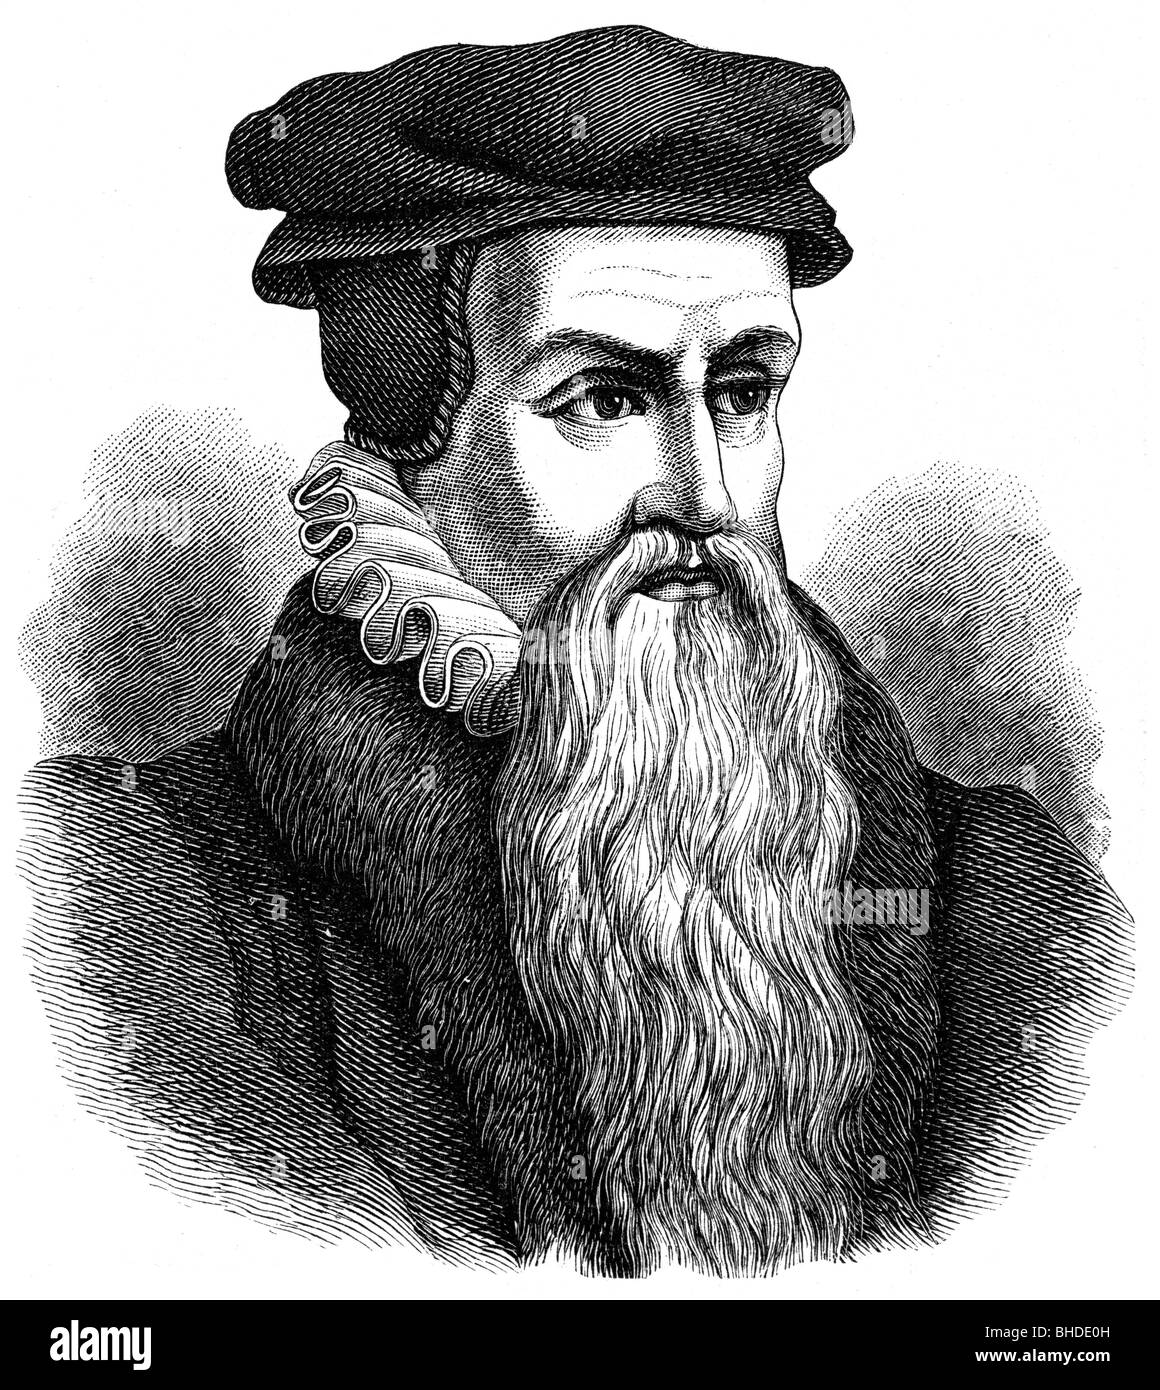 Beza, Theodore, 24.6.1519 - 13.10.1605, umanista e riformista francese, ritratto, incisione in legno, 19th secolo, , Foto Stock